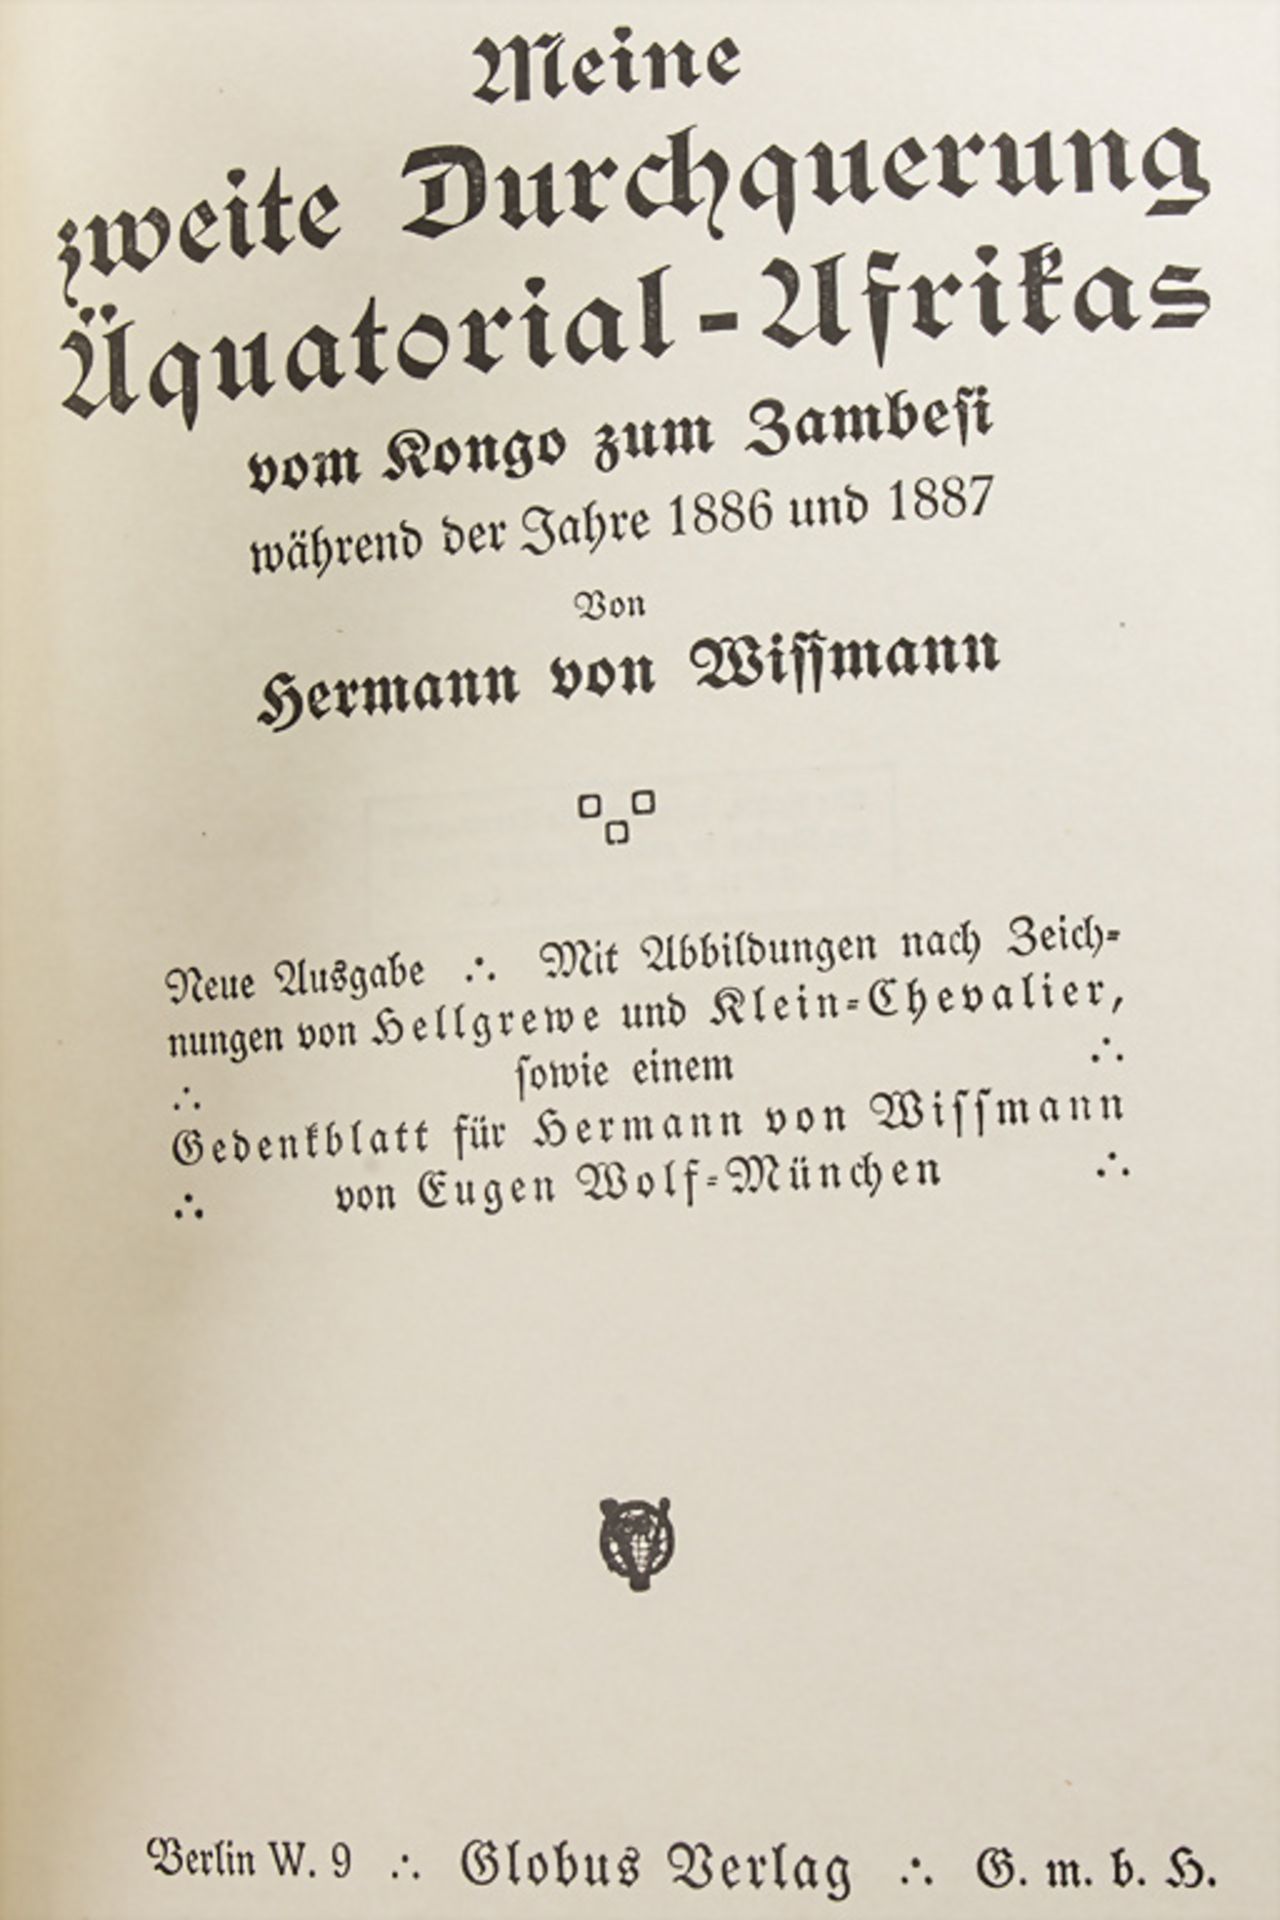 Hermann von Wissmann, 'Meine zweite Durchquerung Äquatorial-Afrikas...', Berlin, o.J.